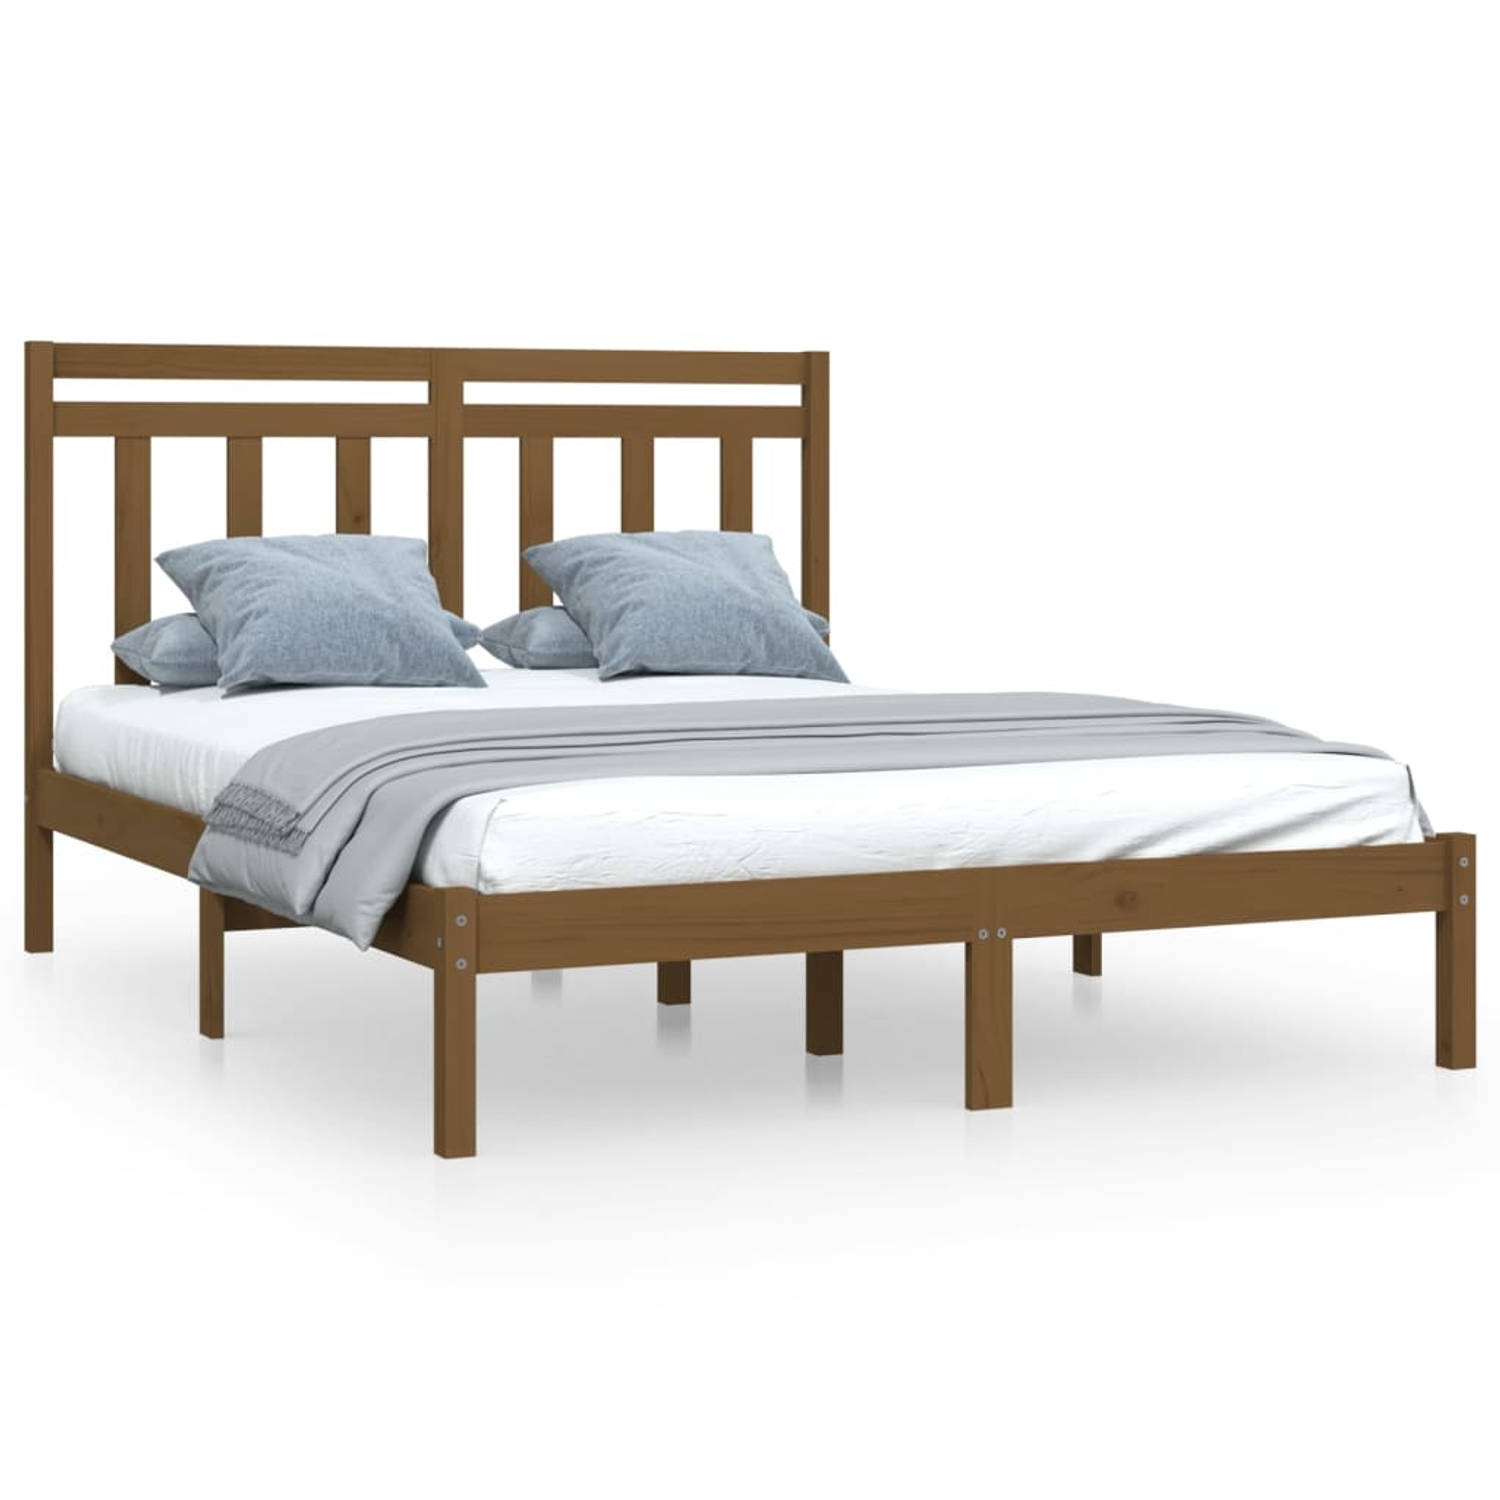 The Living Store Bedframe massief hout honingbruin 120x200 cm - Bedframe - Bedframes - Tweepersoonsbed - Bed - Bedombouw - Dubbel Bed - Frame - Bed Frame - Ledikant - Houten Bedfra